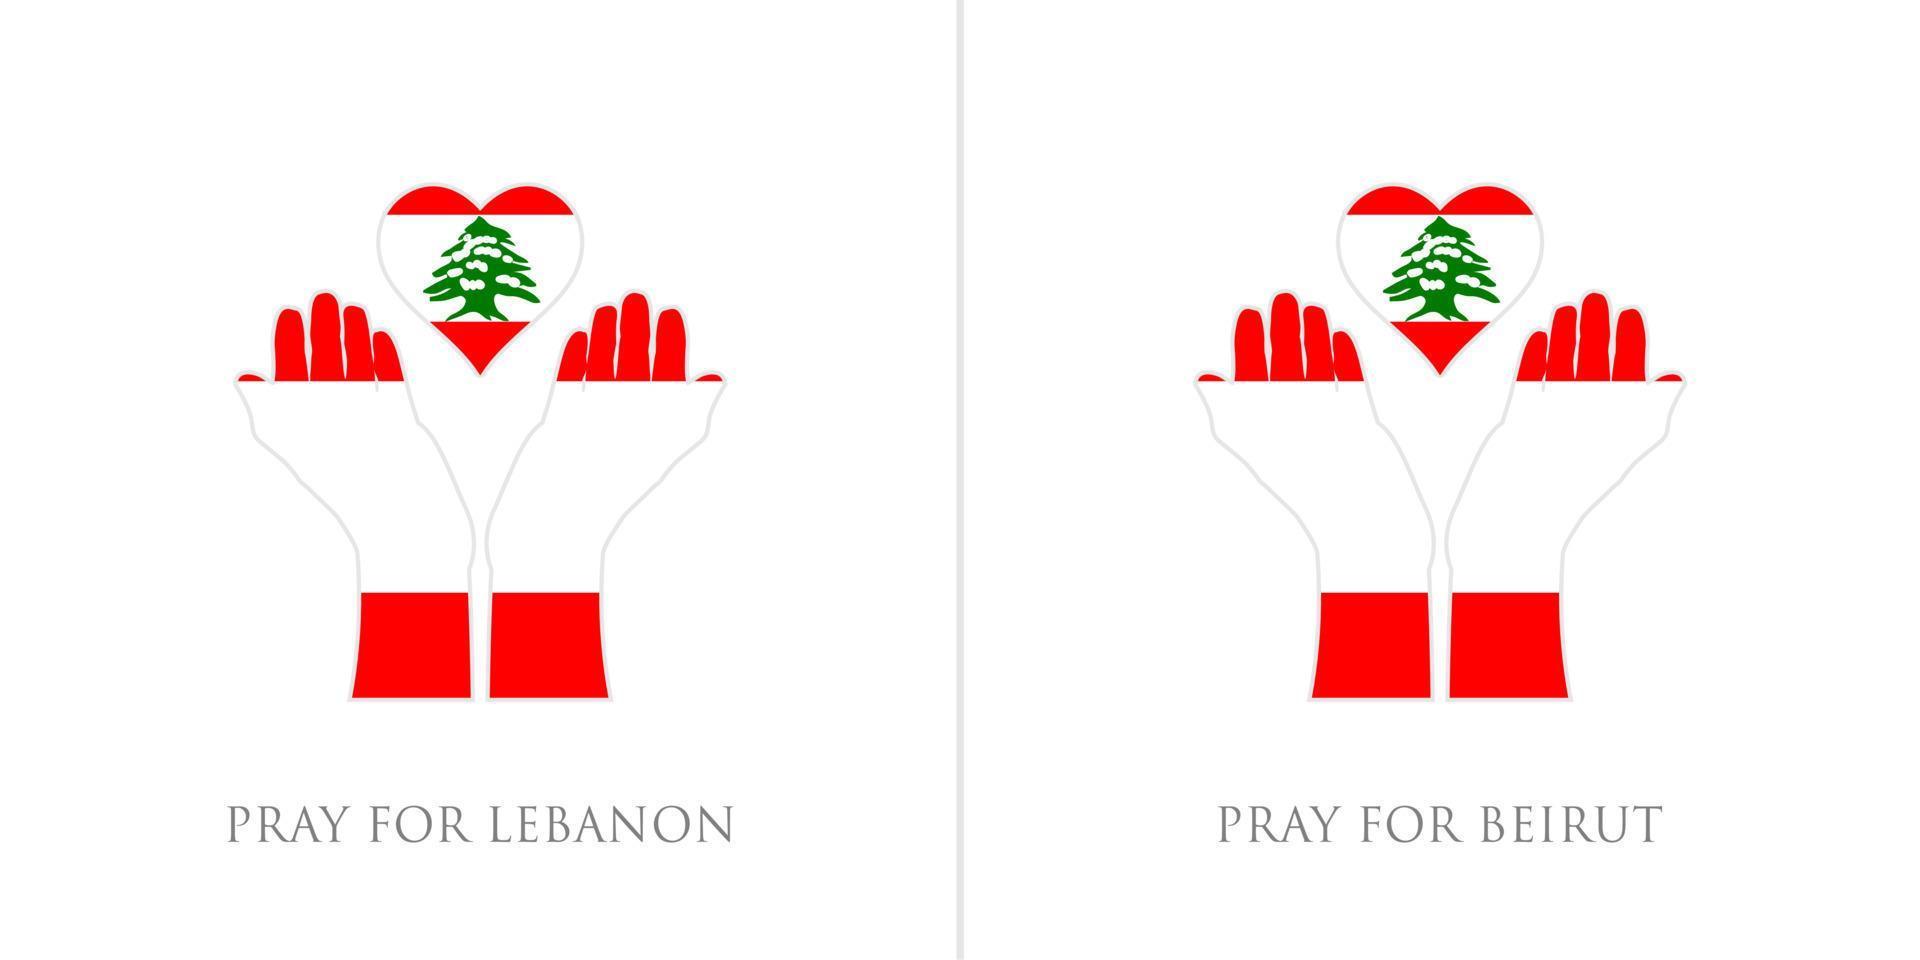 bid voor Libanon en bid voor Beiroet vectorillustratie. libanon vlag van massale explosie. ontwerp voor de mensheid, vrede, donaties, liefdadigheid en anti-oorlog vector